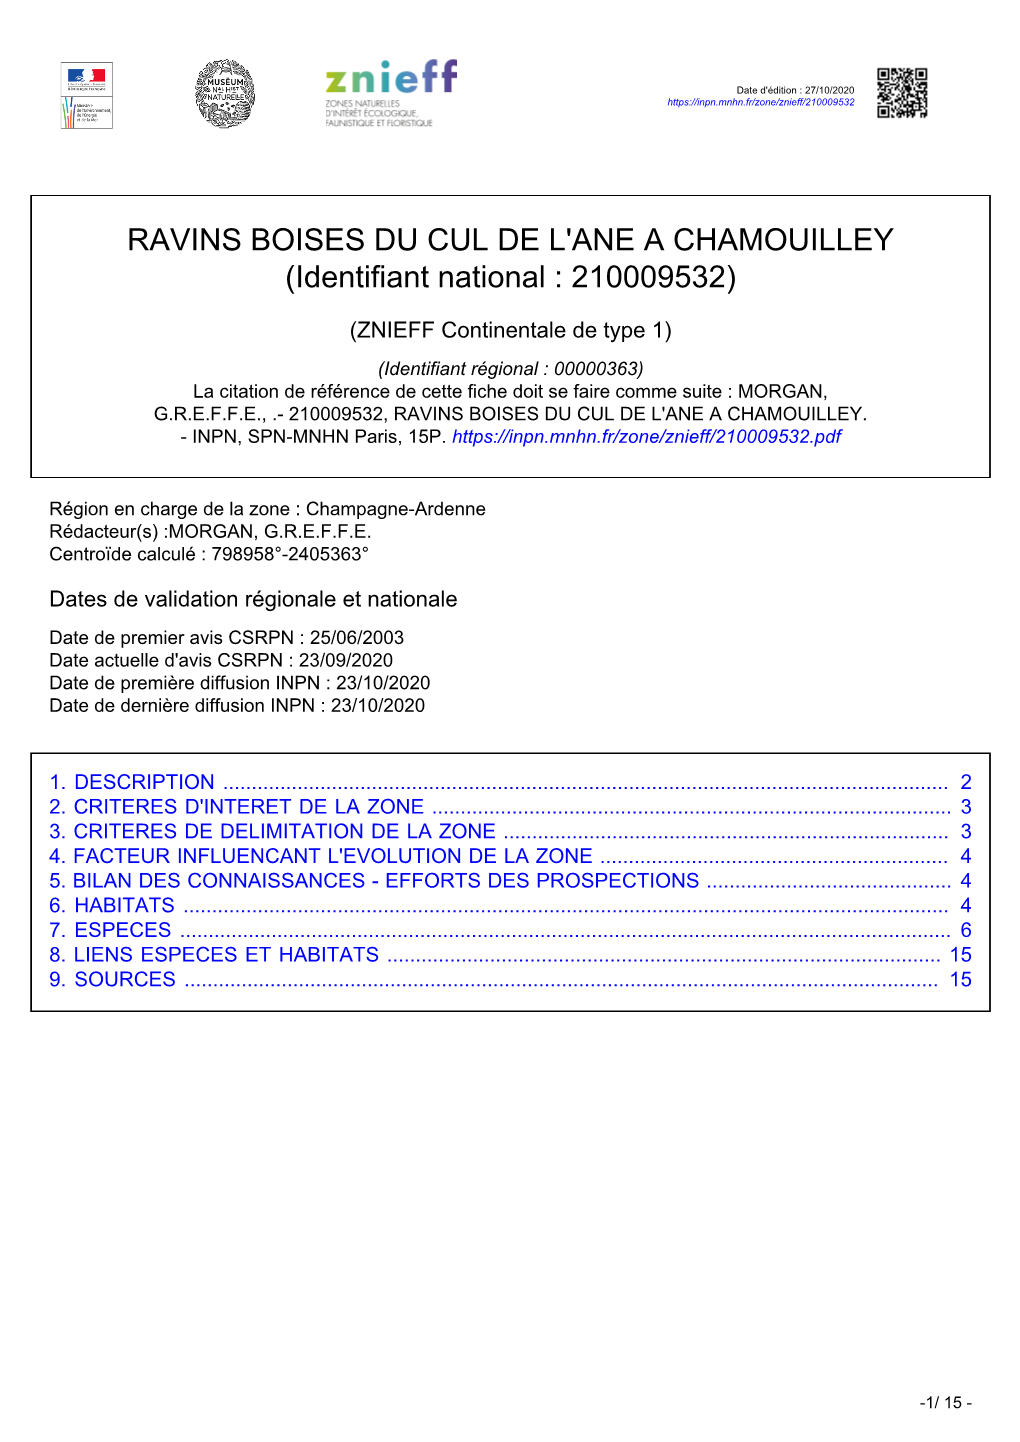 RAVINS BOISES DU CUL DE L'ane a CHAMOUILLEY (Identifiant National : 210009532)